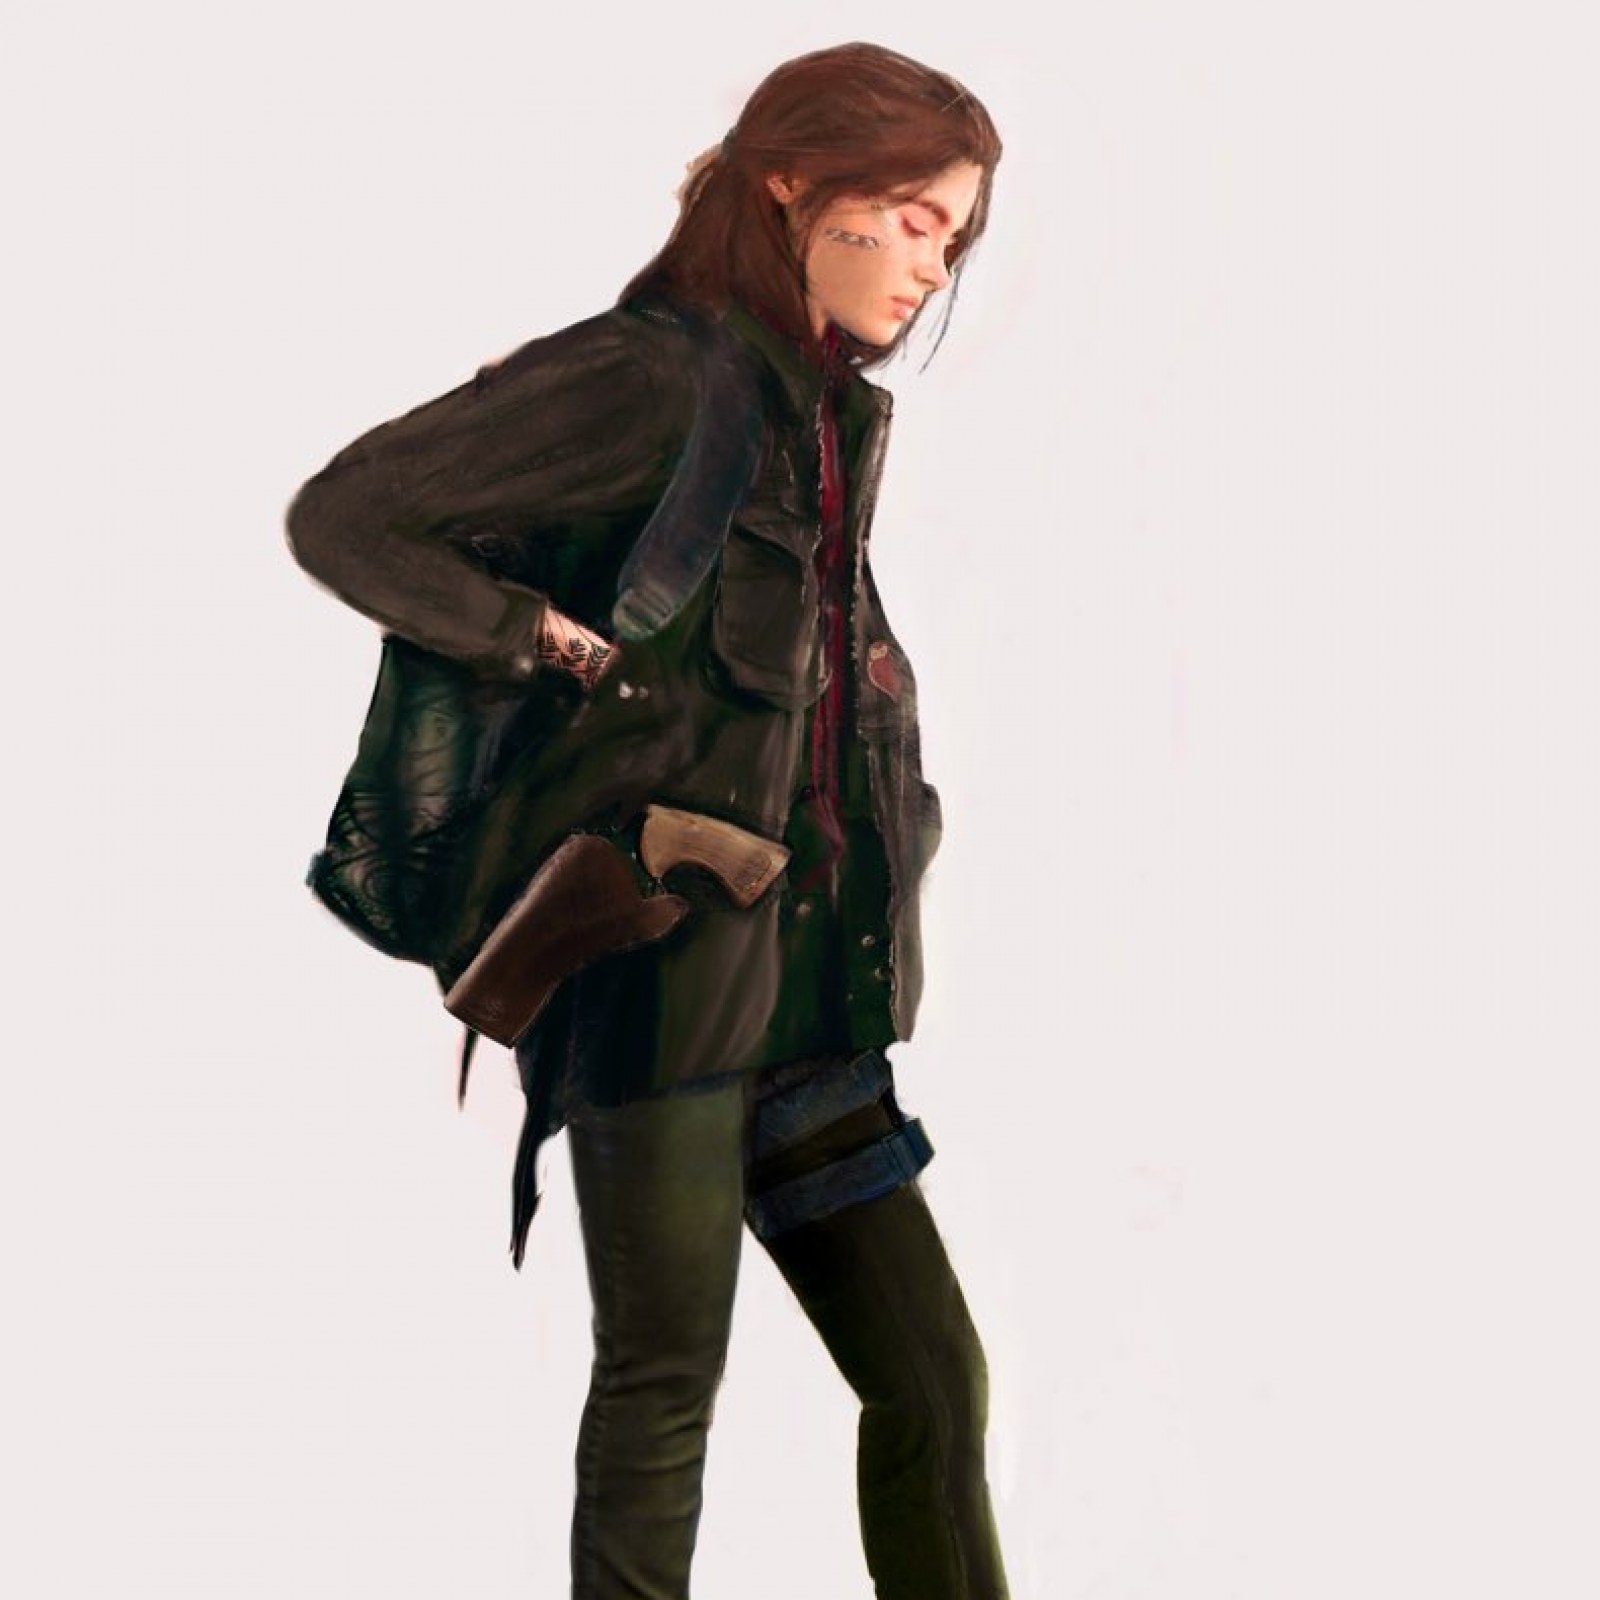 Fã cria arte reimaginando Ellie para um possível The Last of Us Part 3